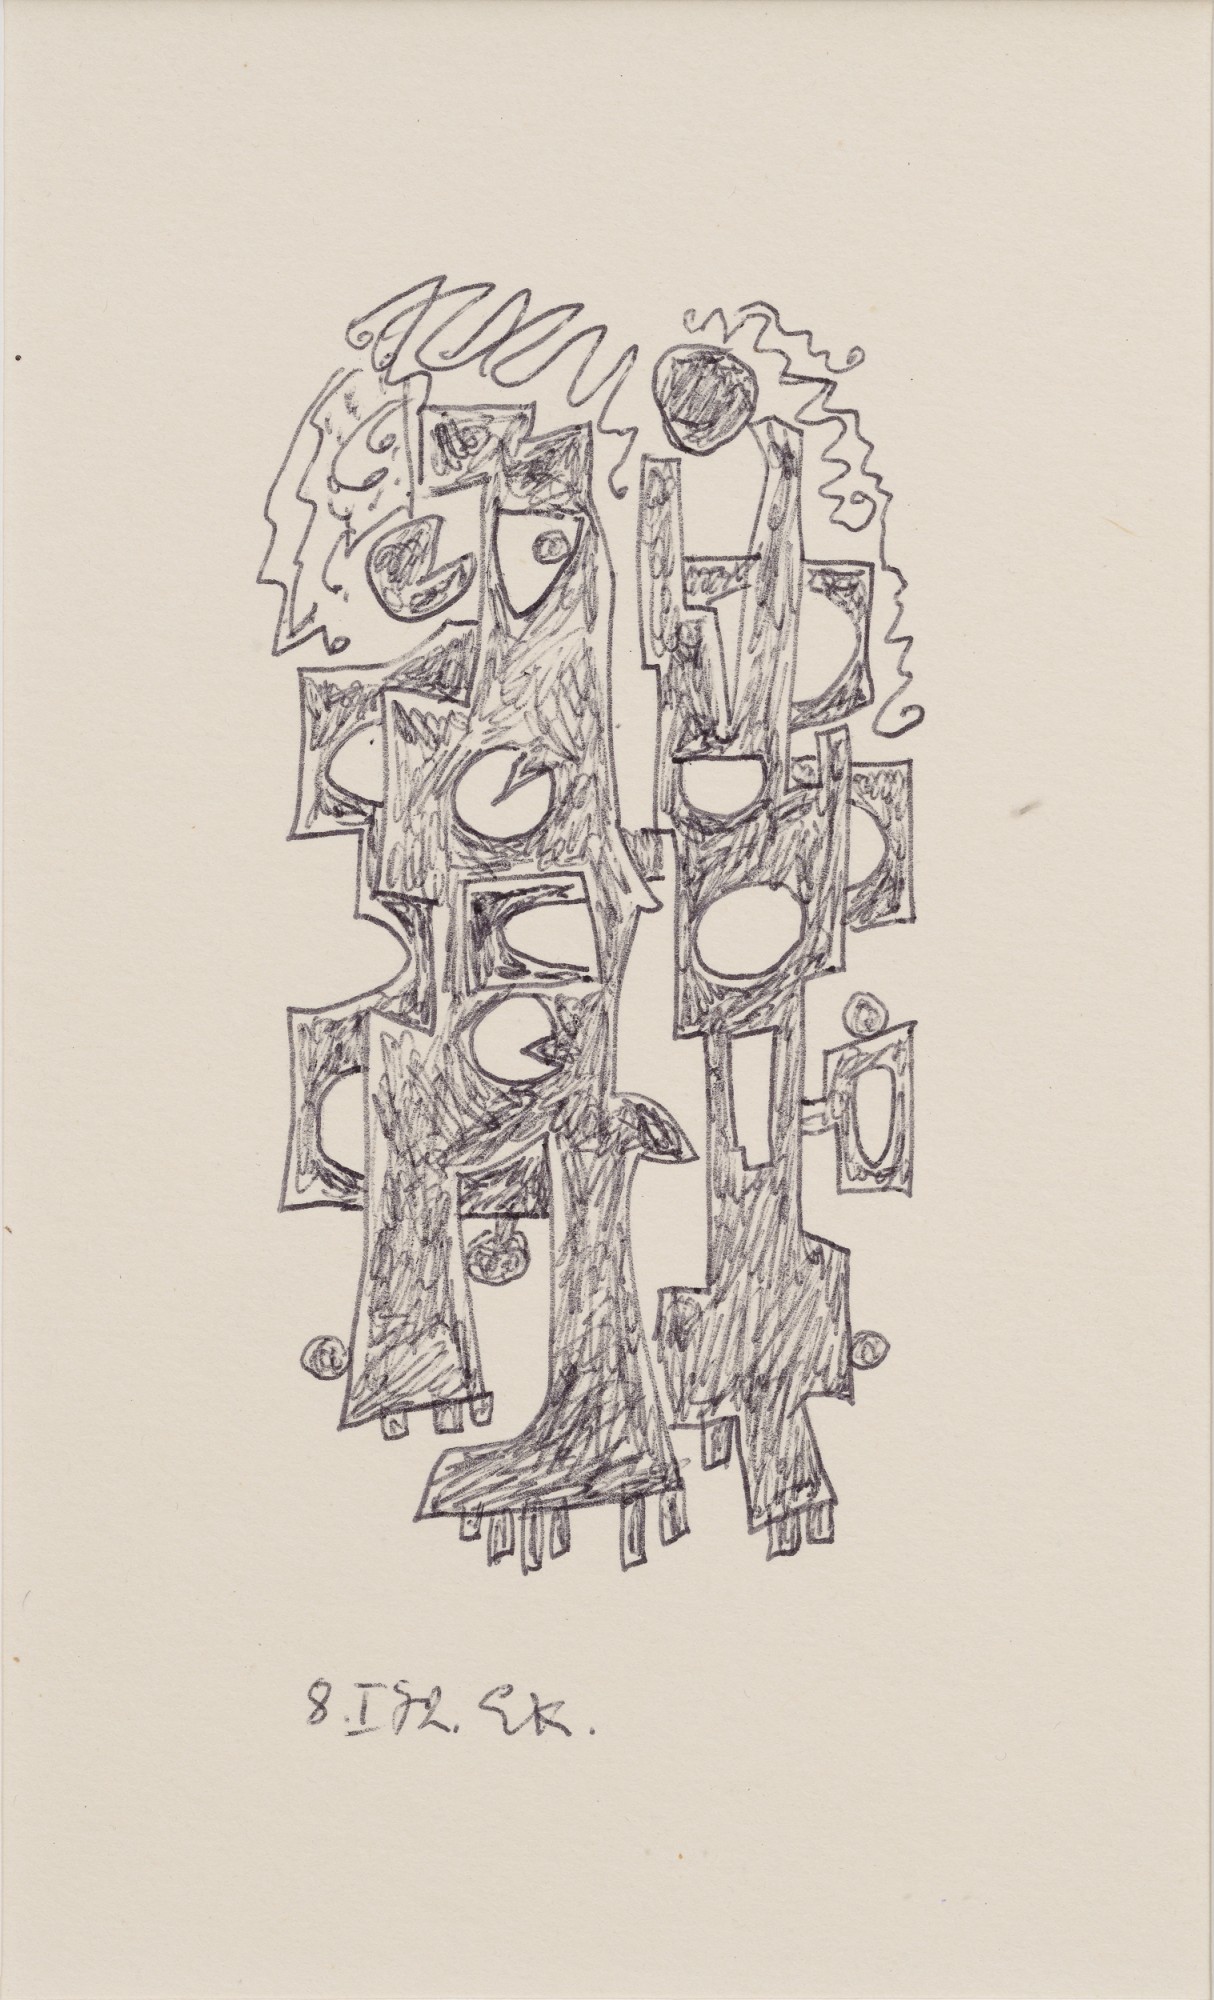 Elmar Kits "Abstraction II"